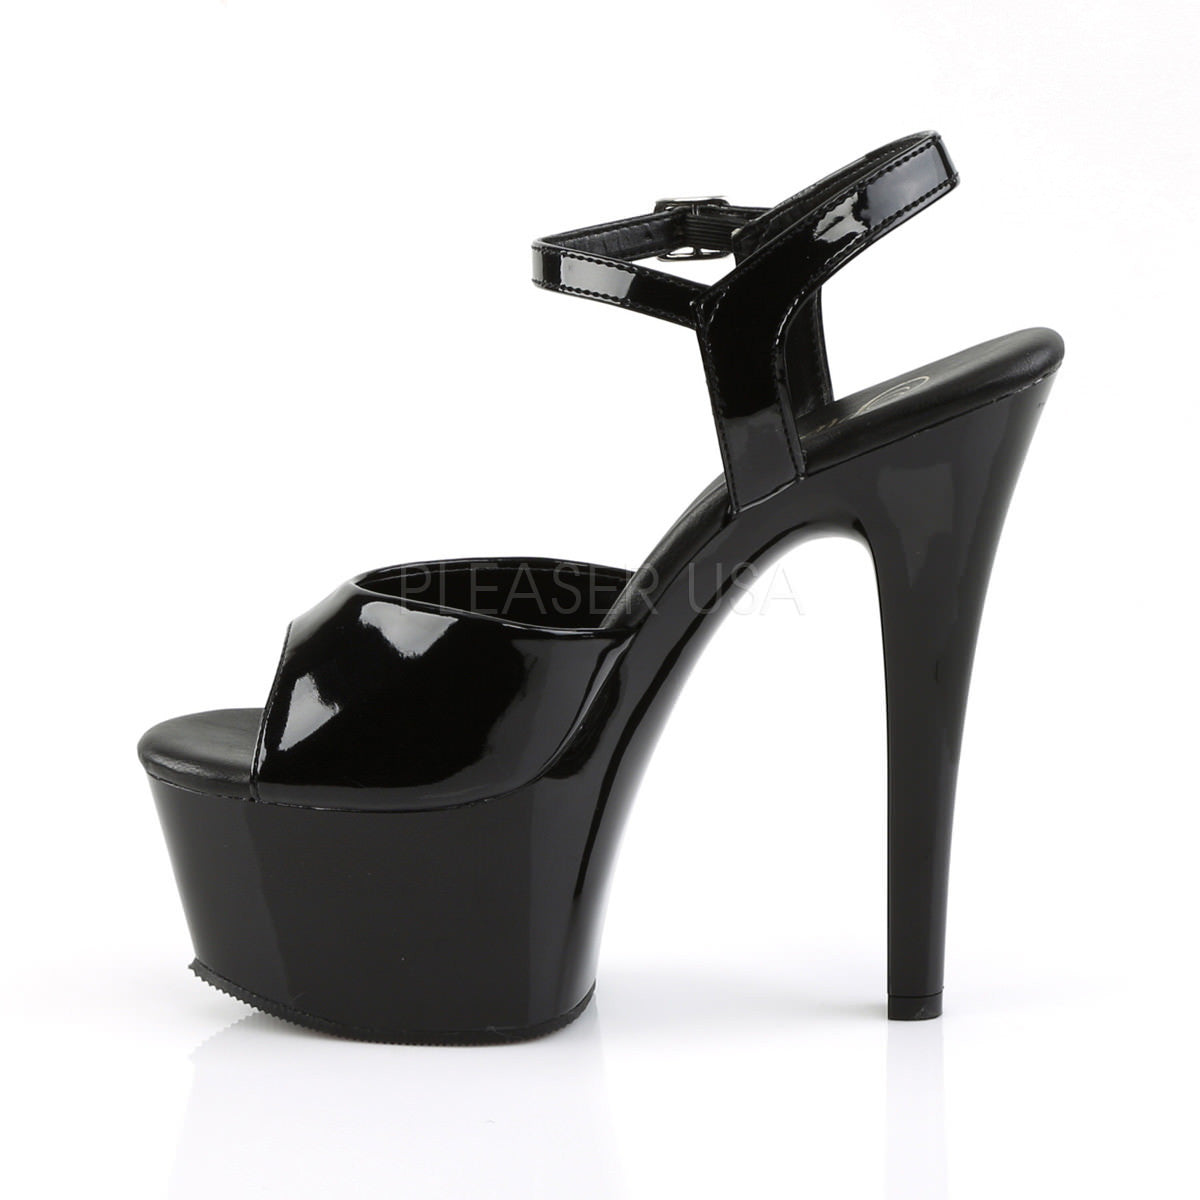 Pleaser ASPIRE-609 Black Ankle Strap Sandals With Black Platform - Shoecup.com - 3